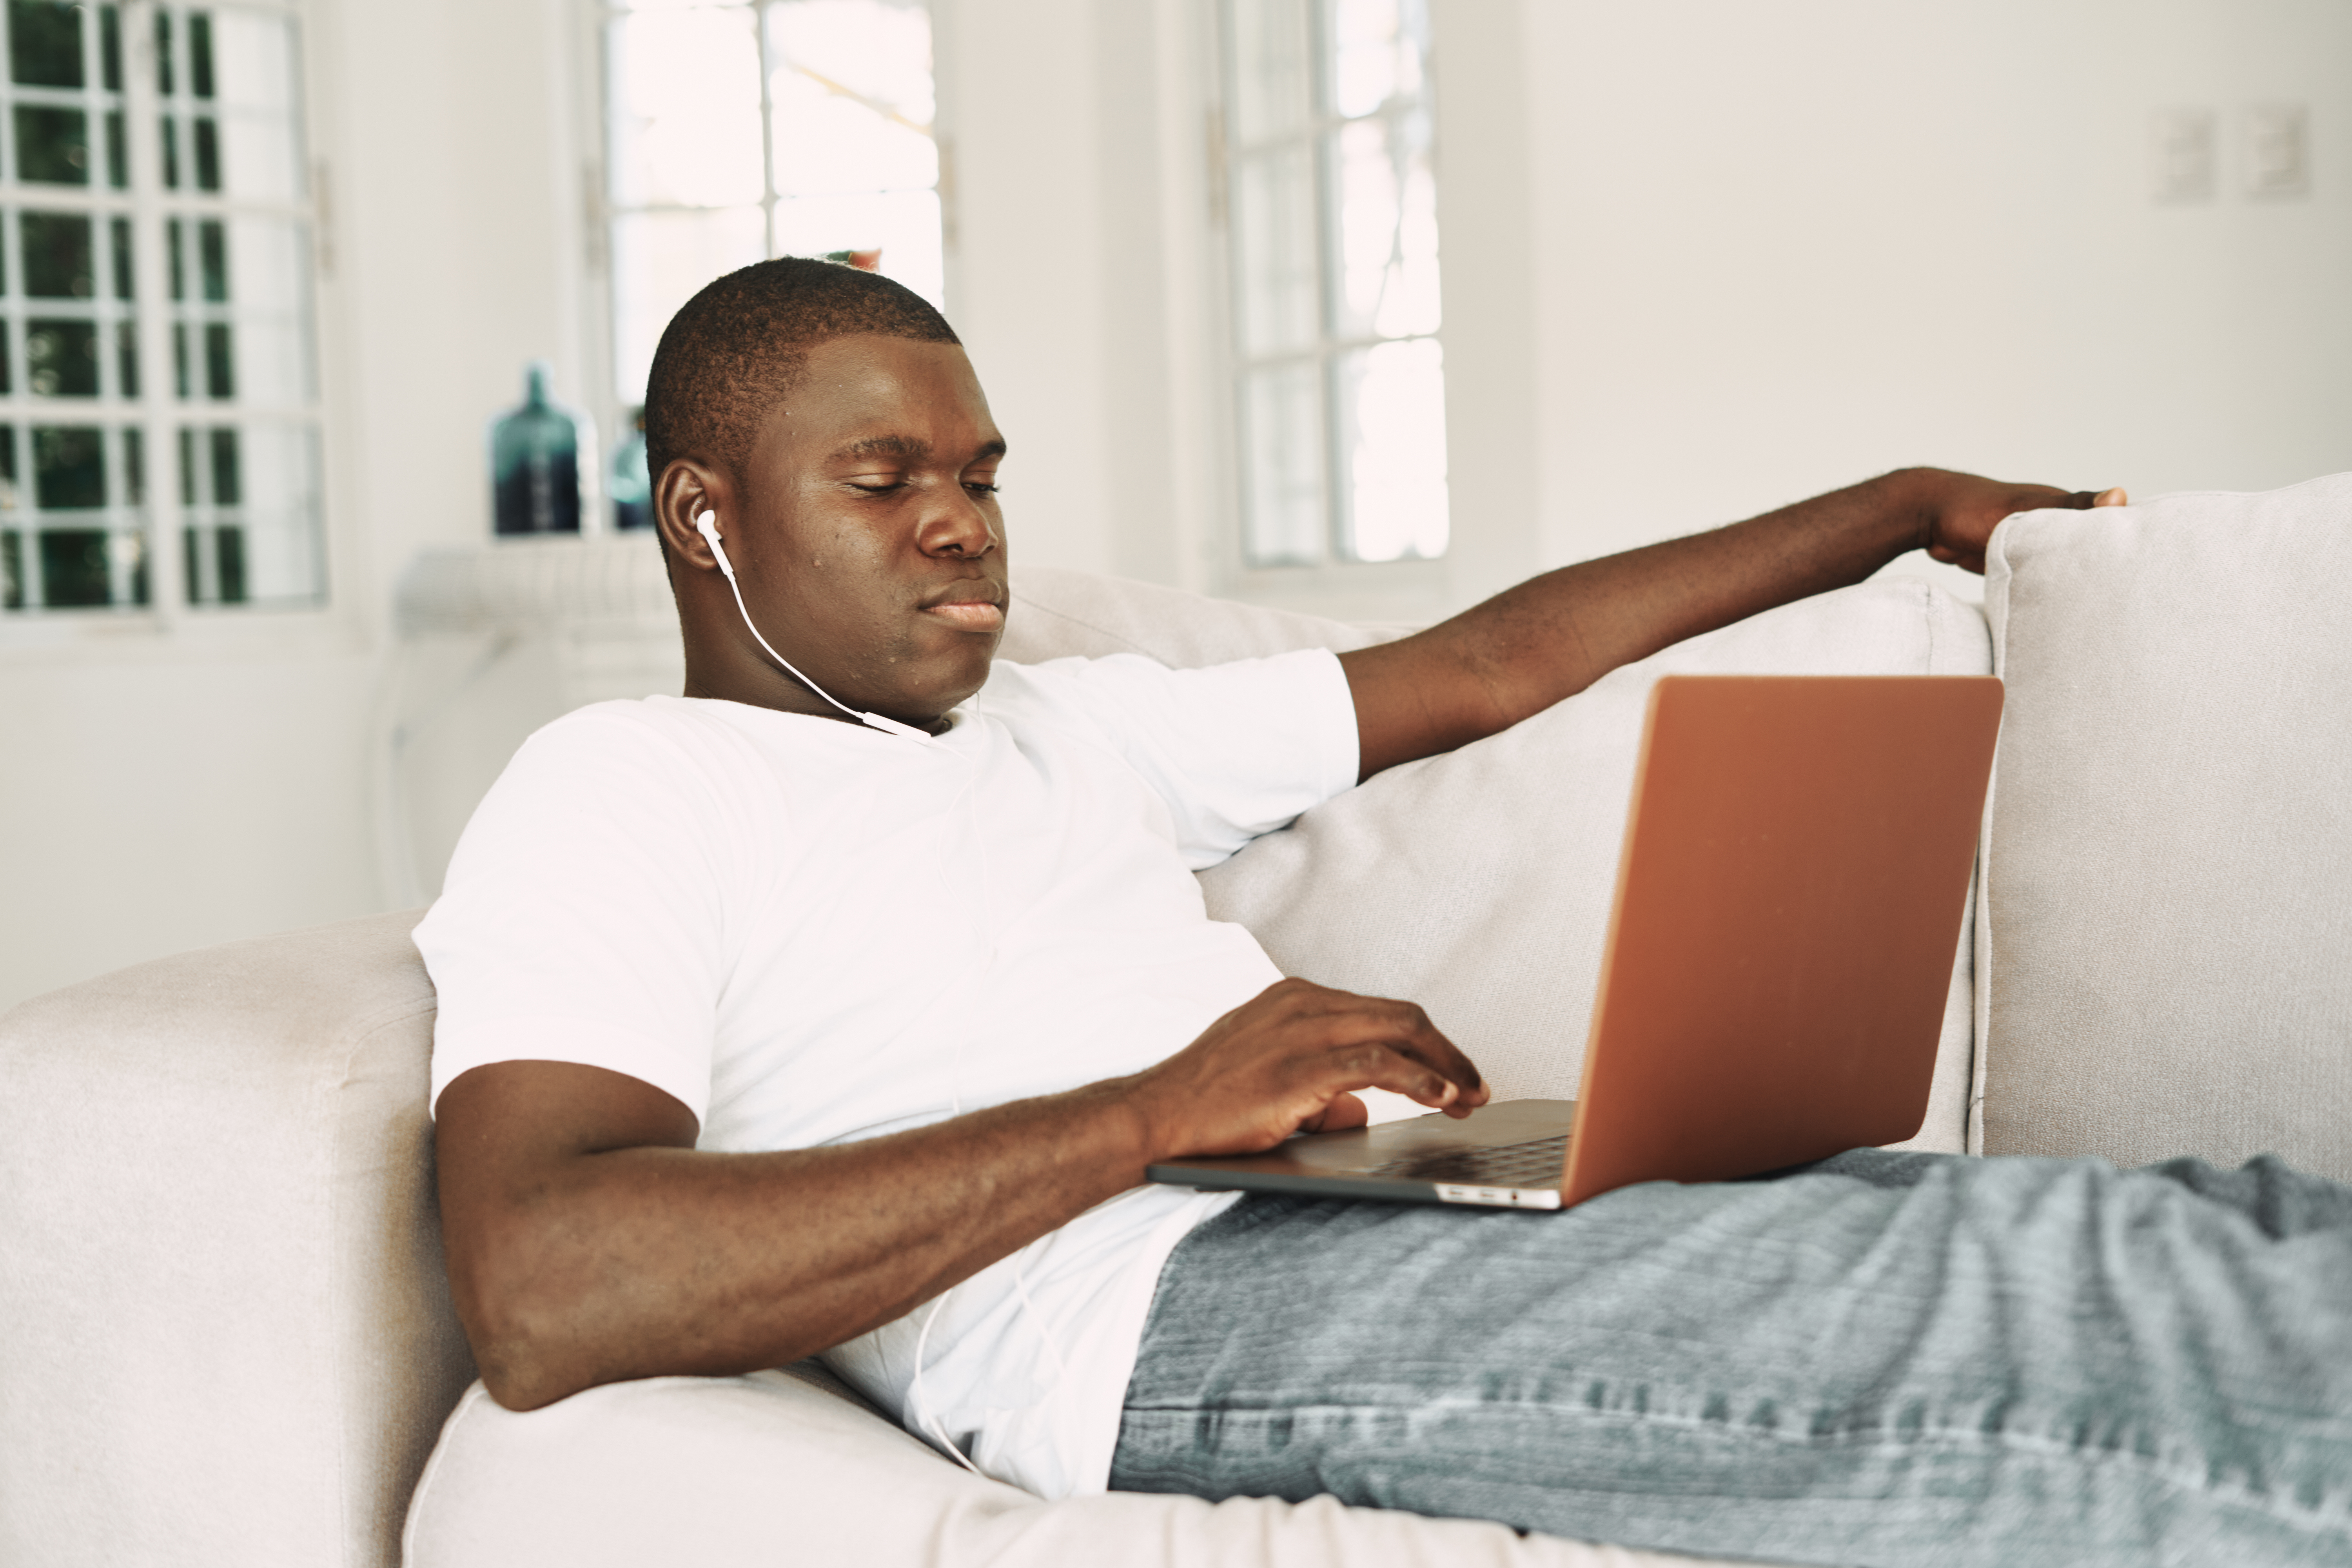 Симпатичный парень африканской внешности лежит на диване с наушниками и ноутбуком на коленях.